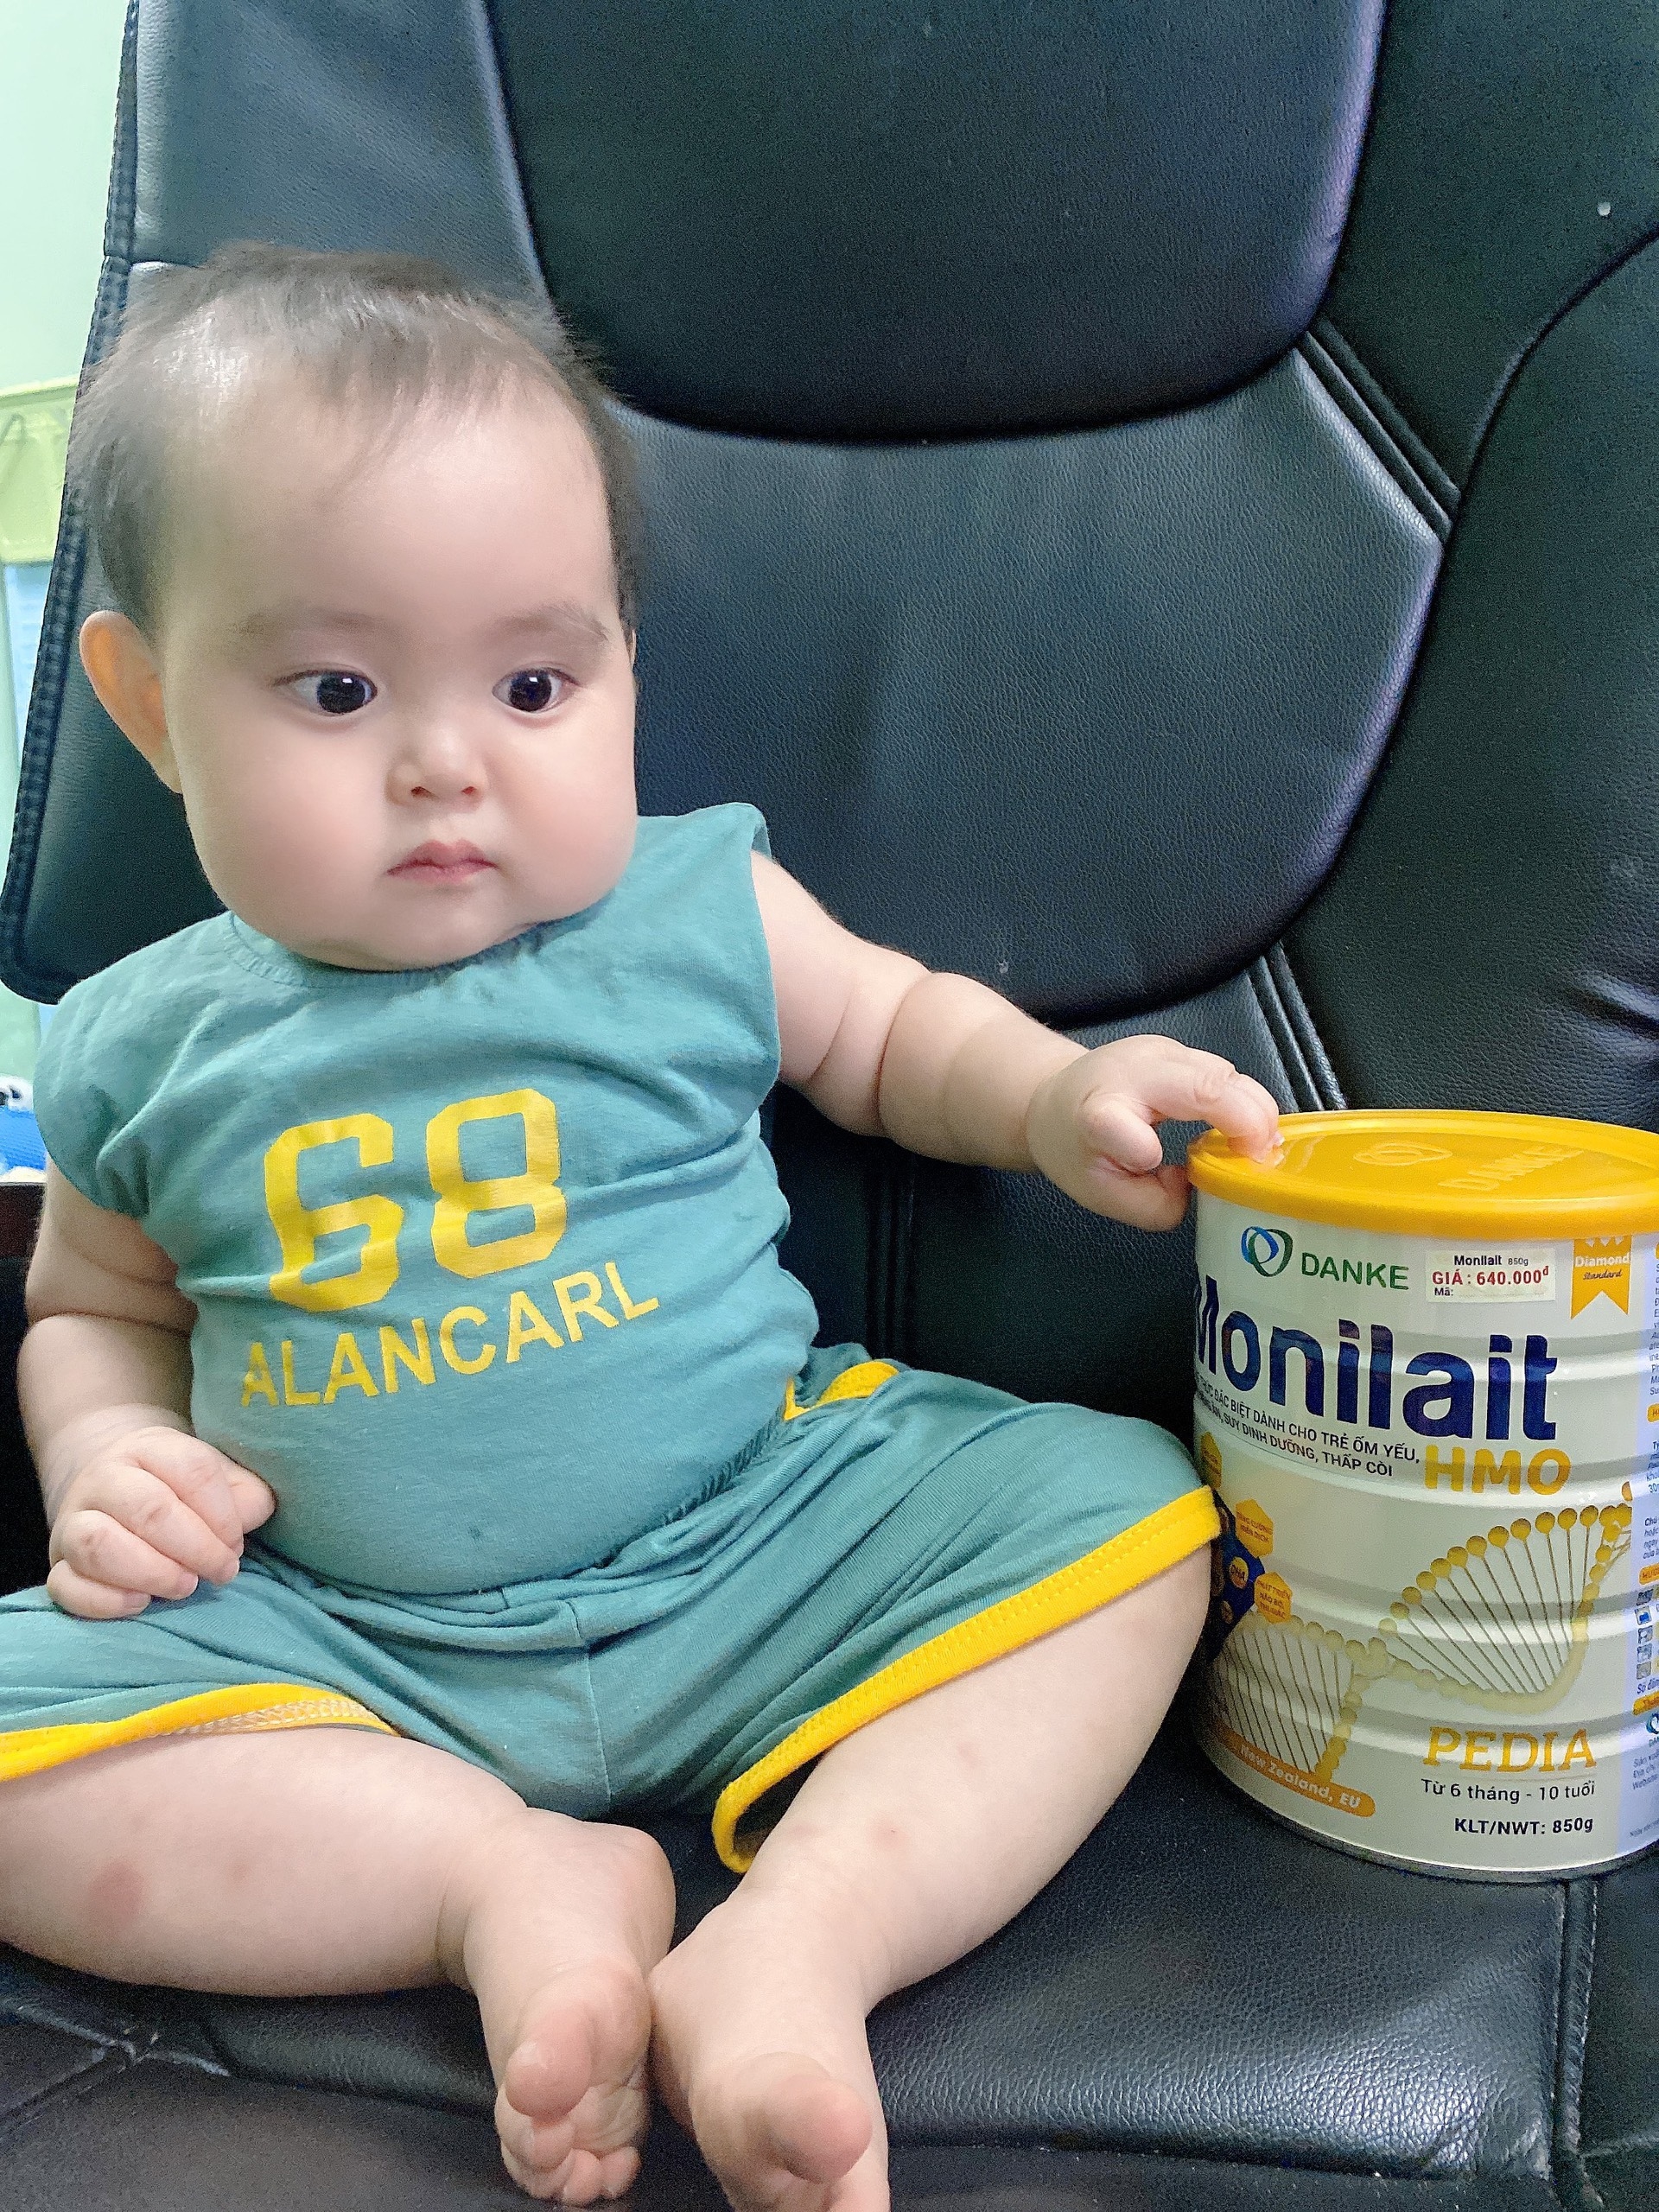 Sữa Monilait Pedia 850g - Giúp trẻ ăn ngon, tăng cân Dành cho bé từ 6 tháng - 10 tuổi